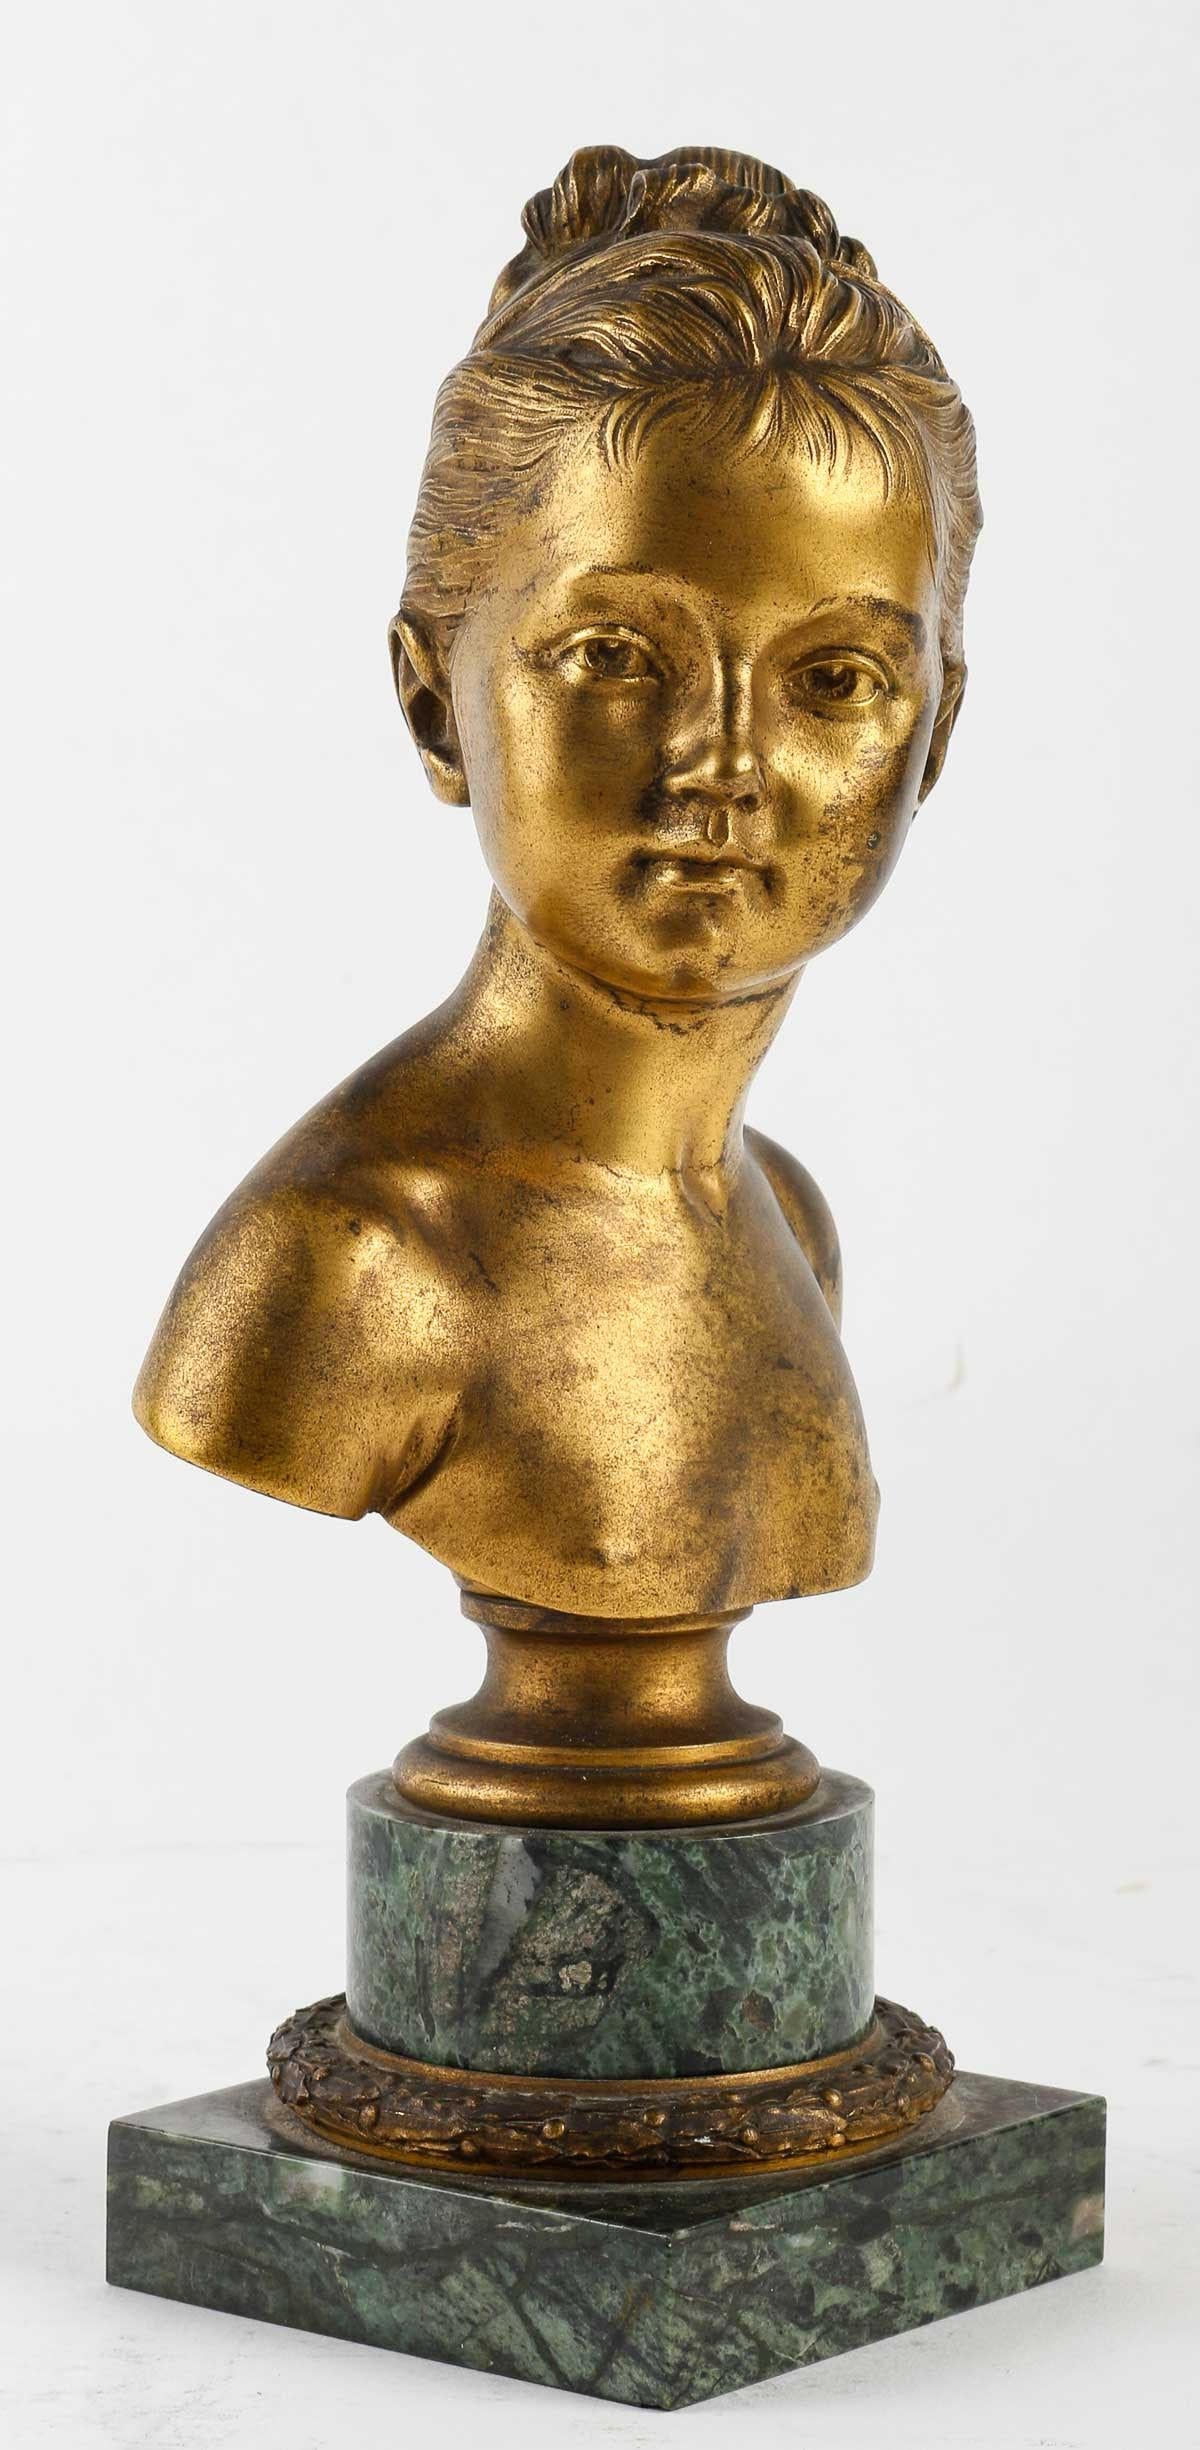 Vergoldete Bronzebüste von Louise Brongniart von Houdon.

Skulptur einer Büste von Louise Brongniart von Jean-Antoine Houdon (1741-1828), Reproduktion des XIX. Jahrhunderts.    
H: 23cm , B: 11cm, T: 8cm